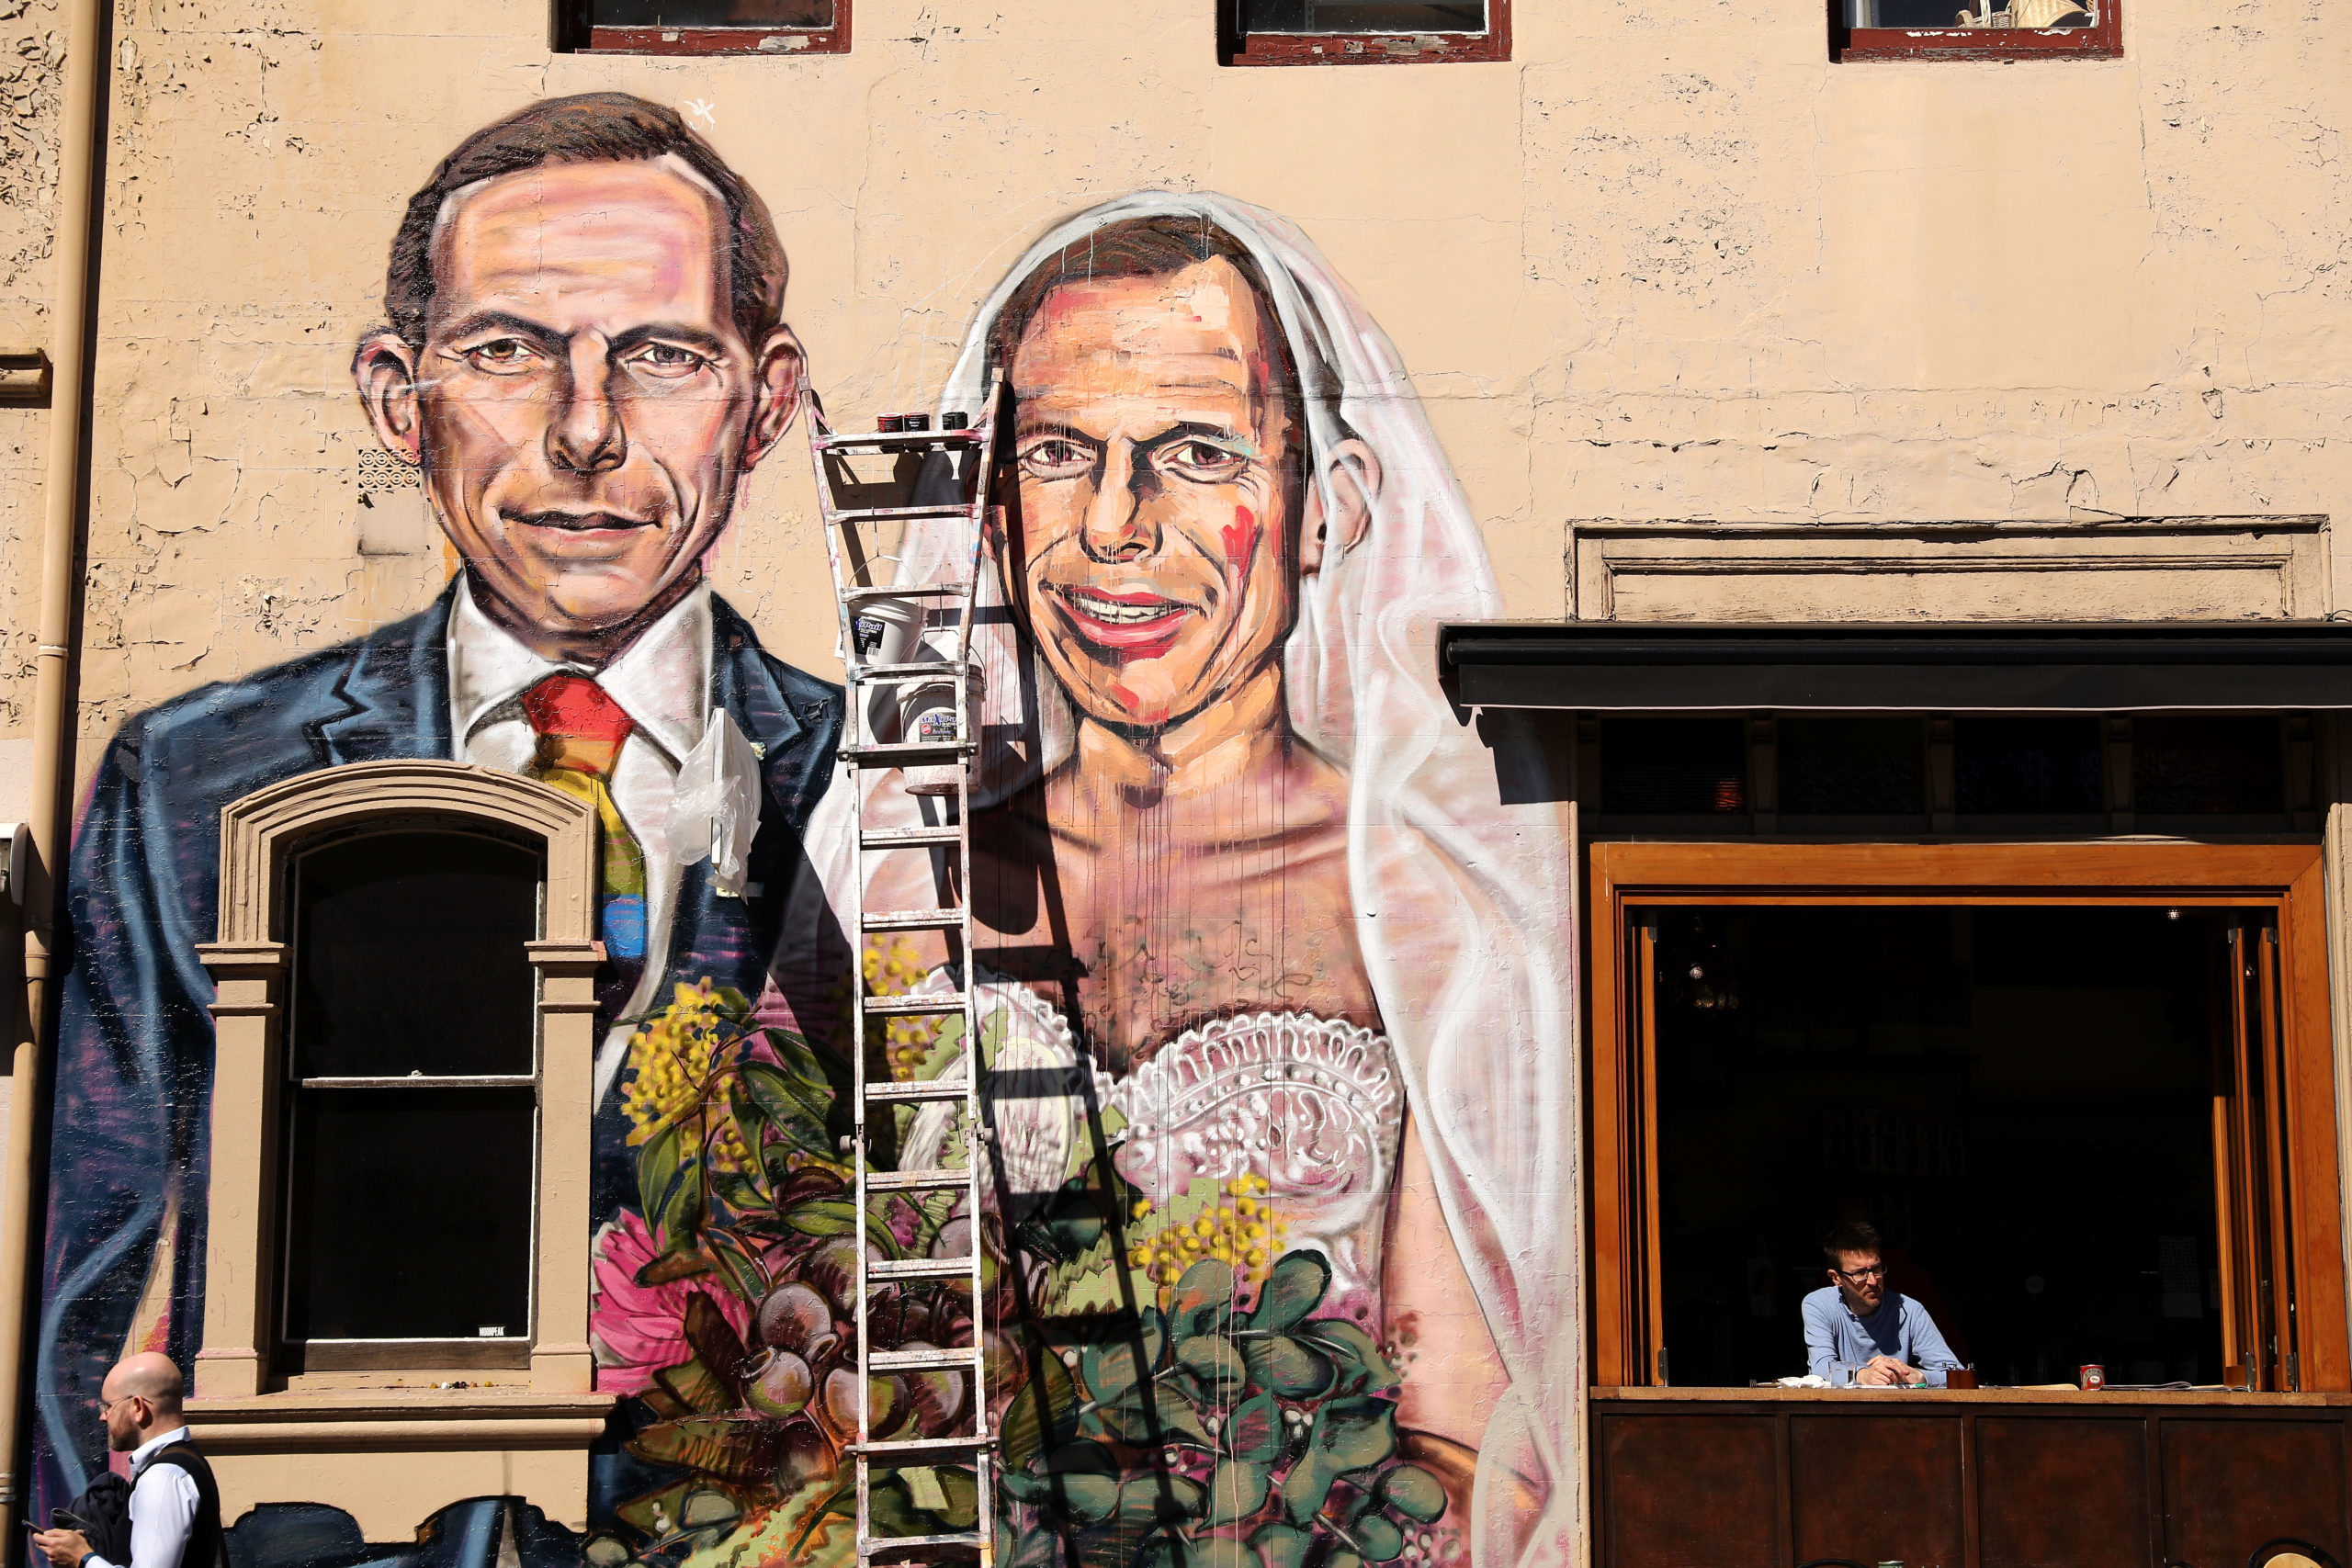 A mural by artist Scott Marsh depicting former Prime Minister Tony Abbott marrying himself 